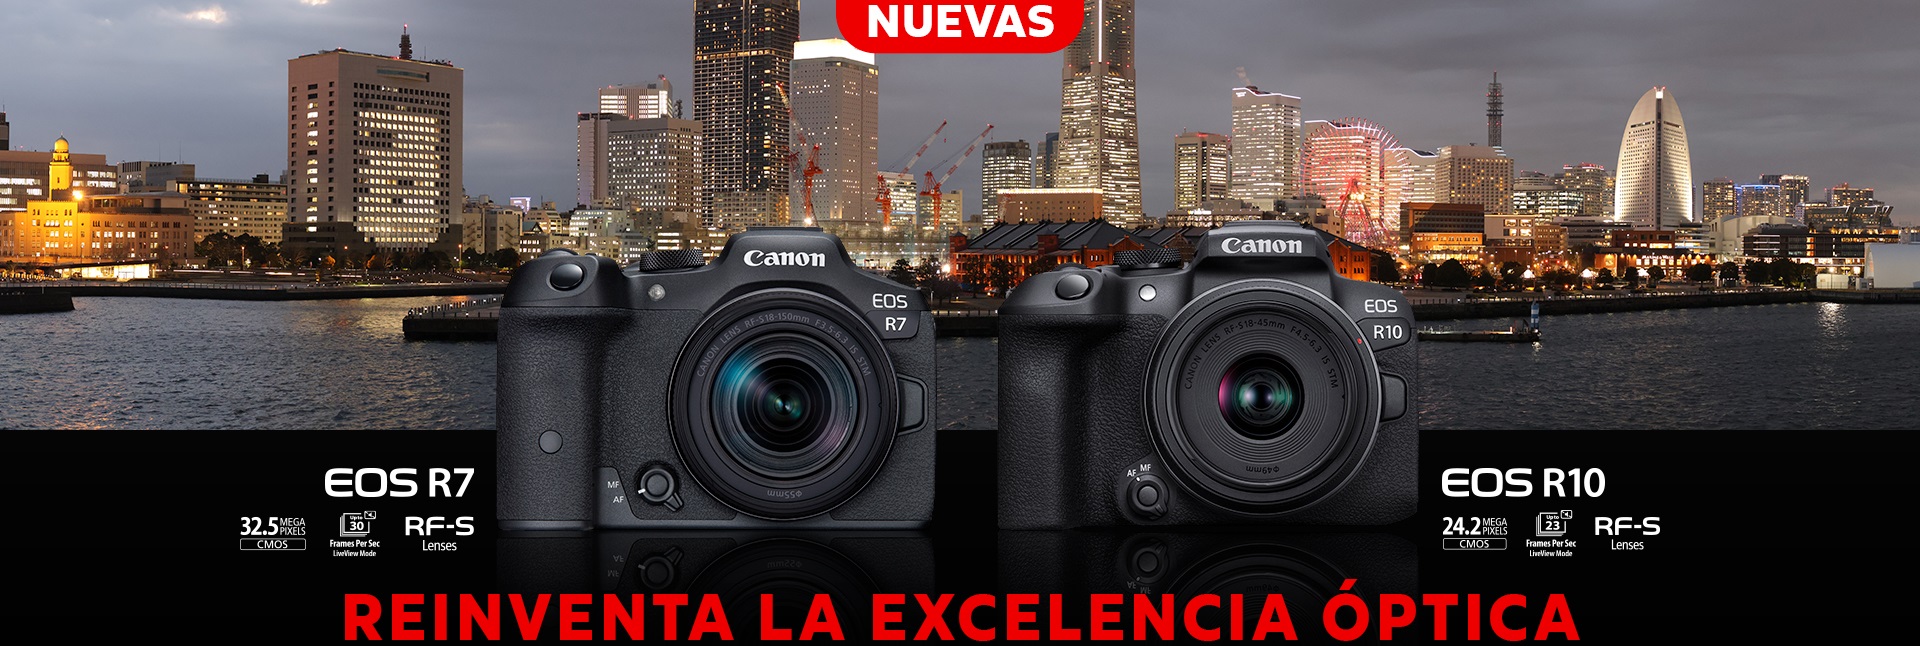 Canon Mexicana Líder en Solución de Imagen